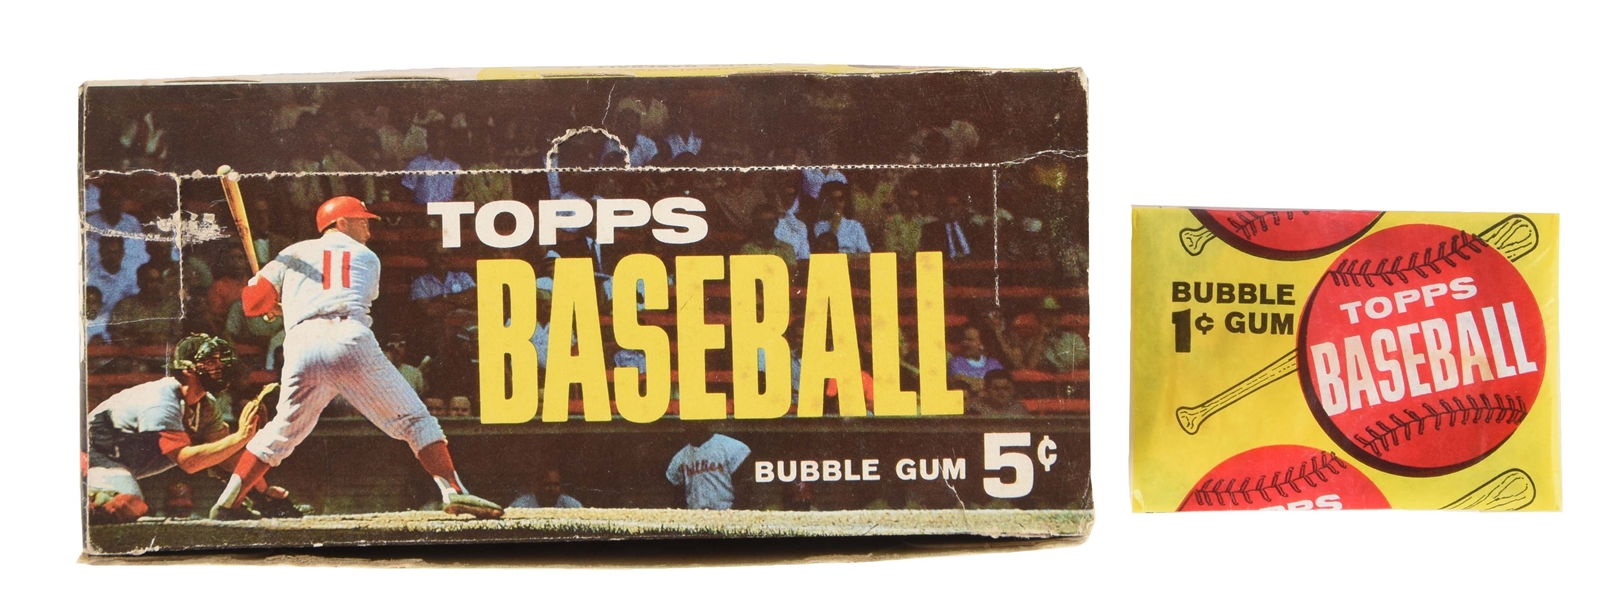 1963 TOPPS BASEBALL 1¢ UNOPENED PACK & DISPLAY BOX.